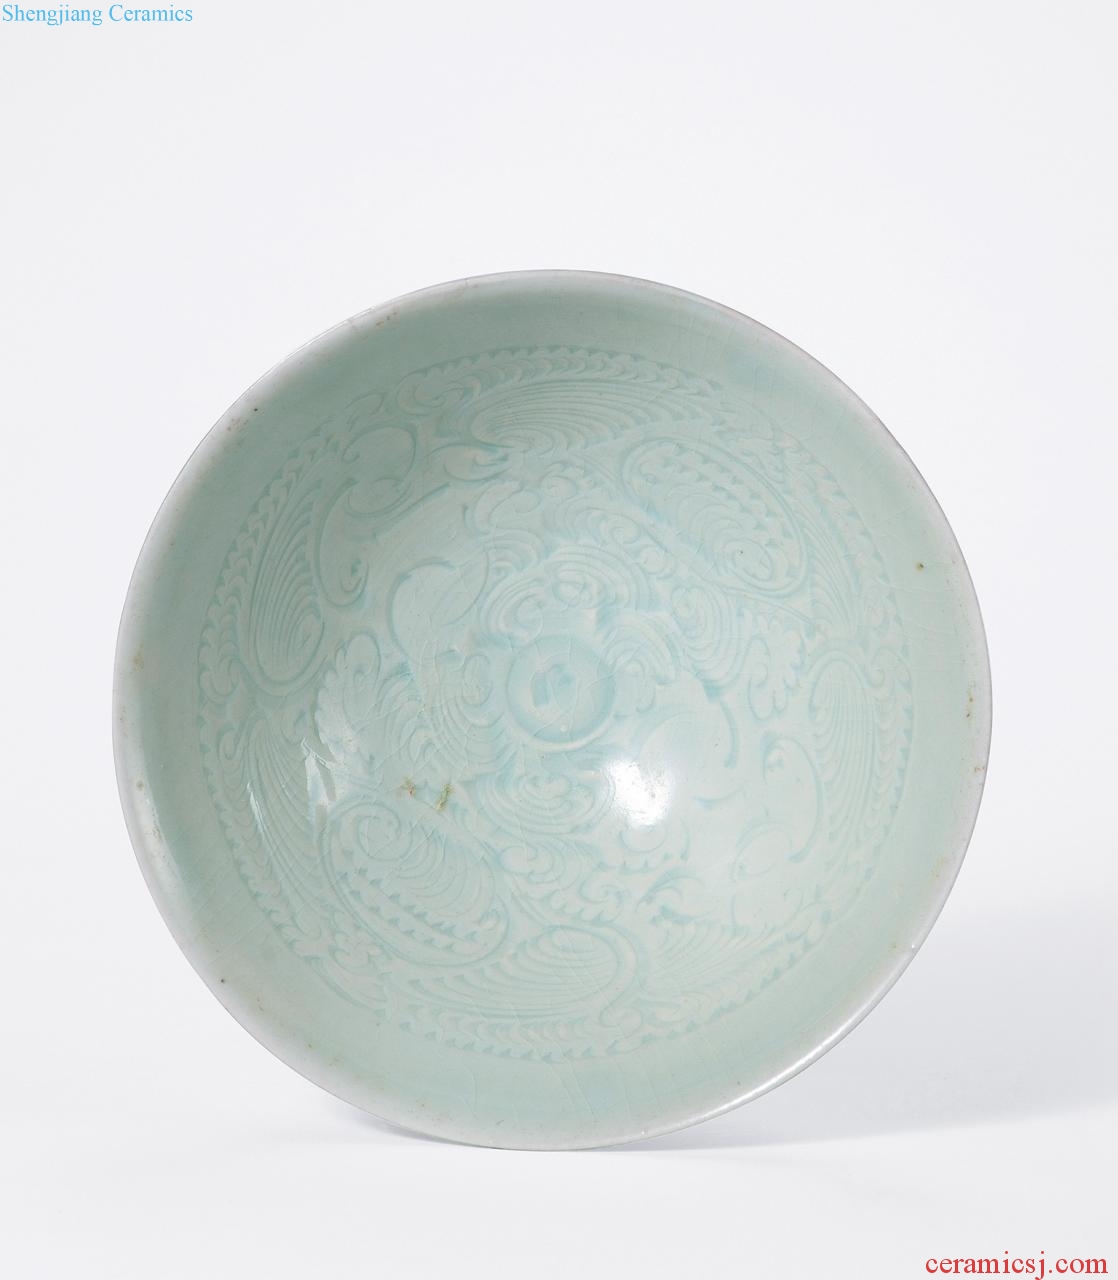 Song dynasty (960-1279), green white glaze score YingXiWen bowl